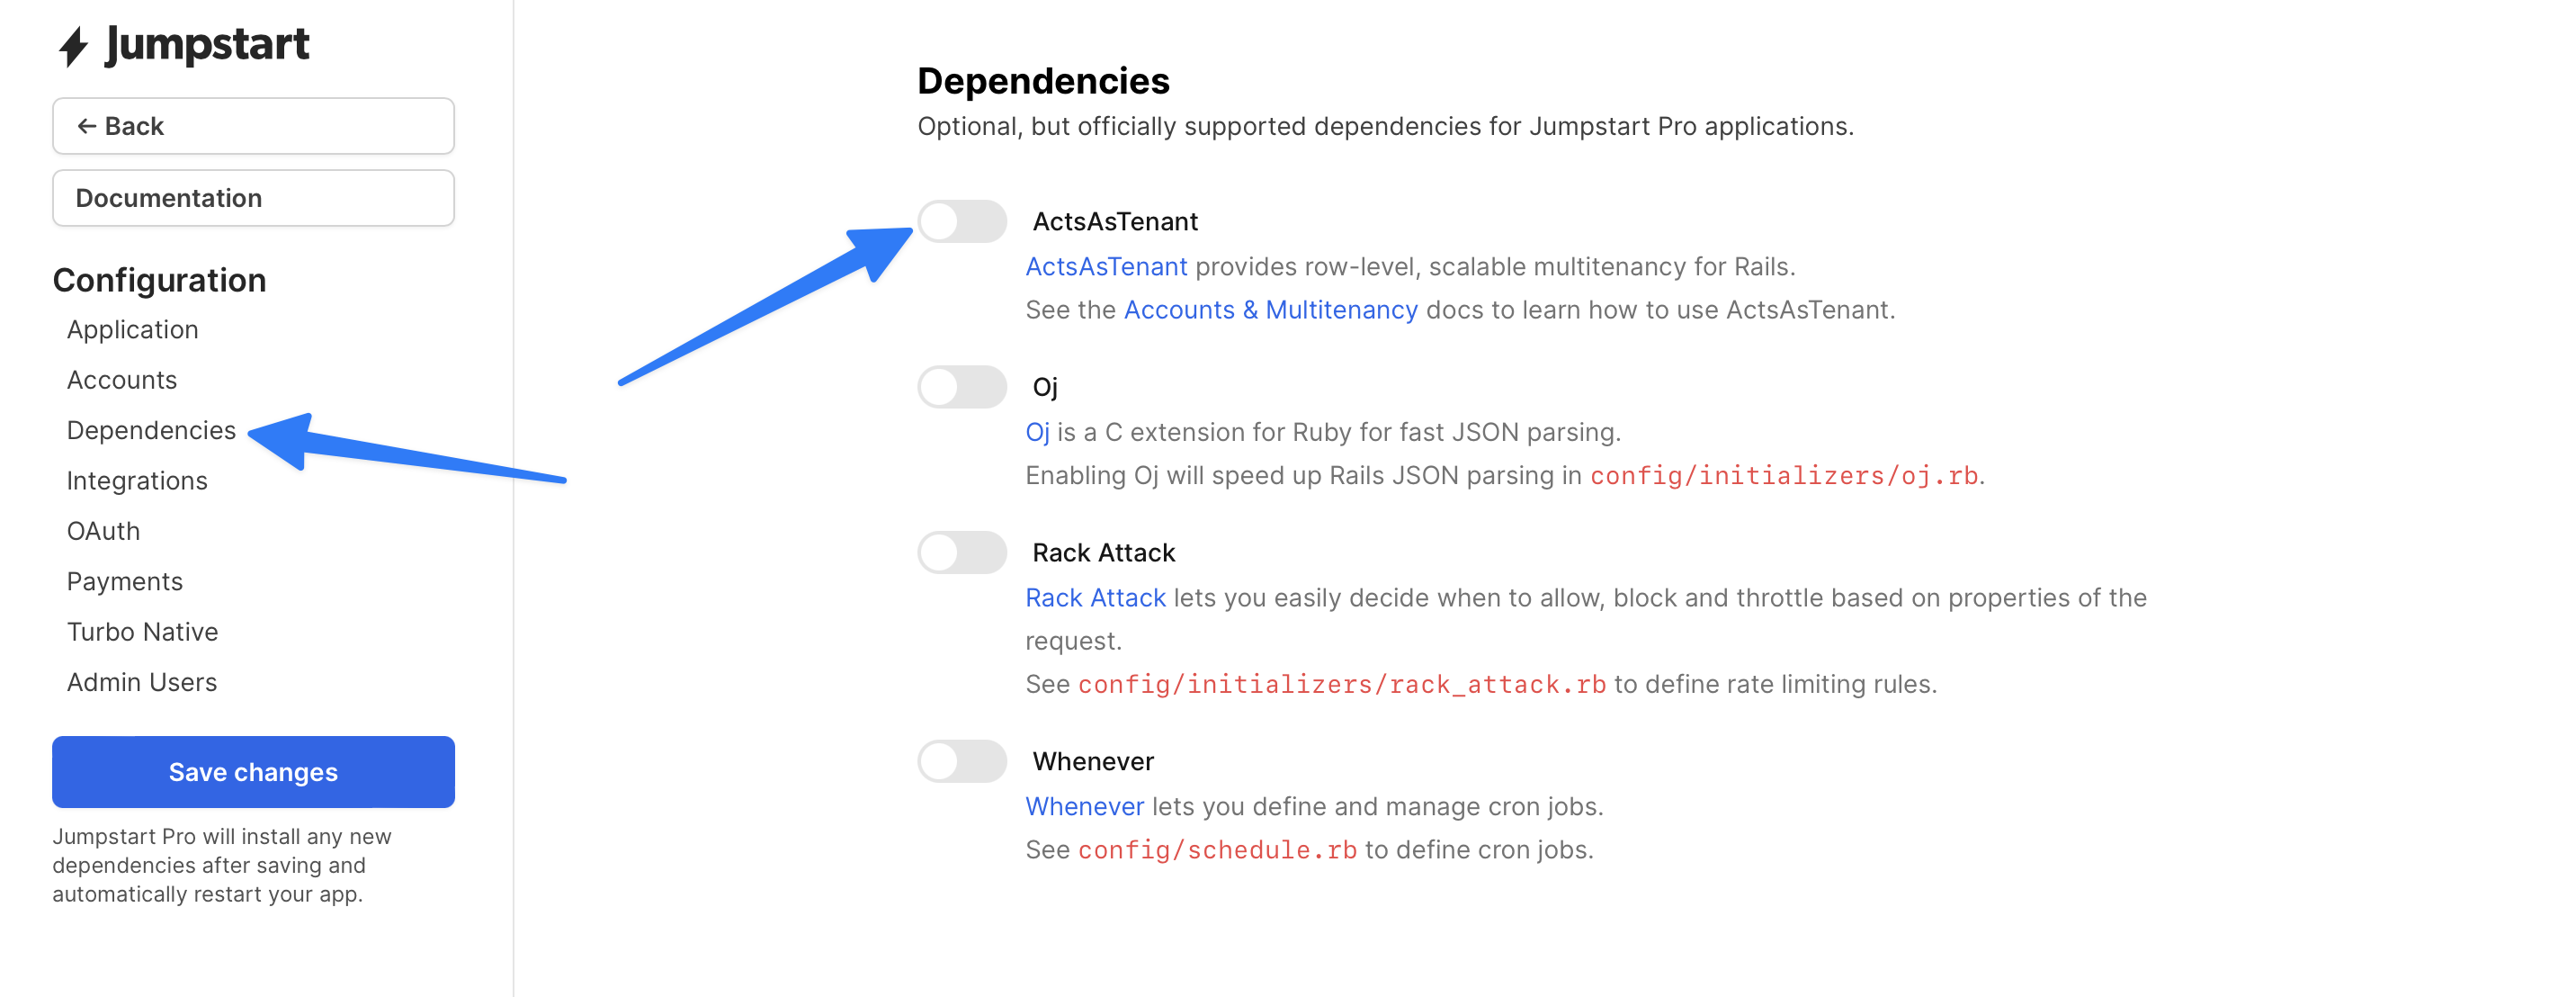 Screenshot of Jumpstart Pro Dependencies configuration wizard